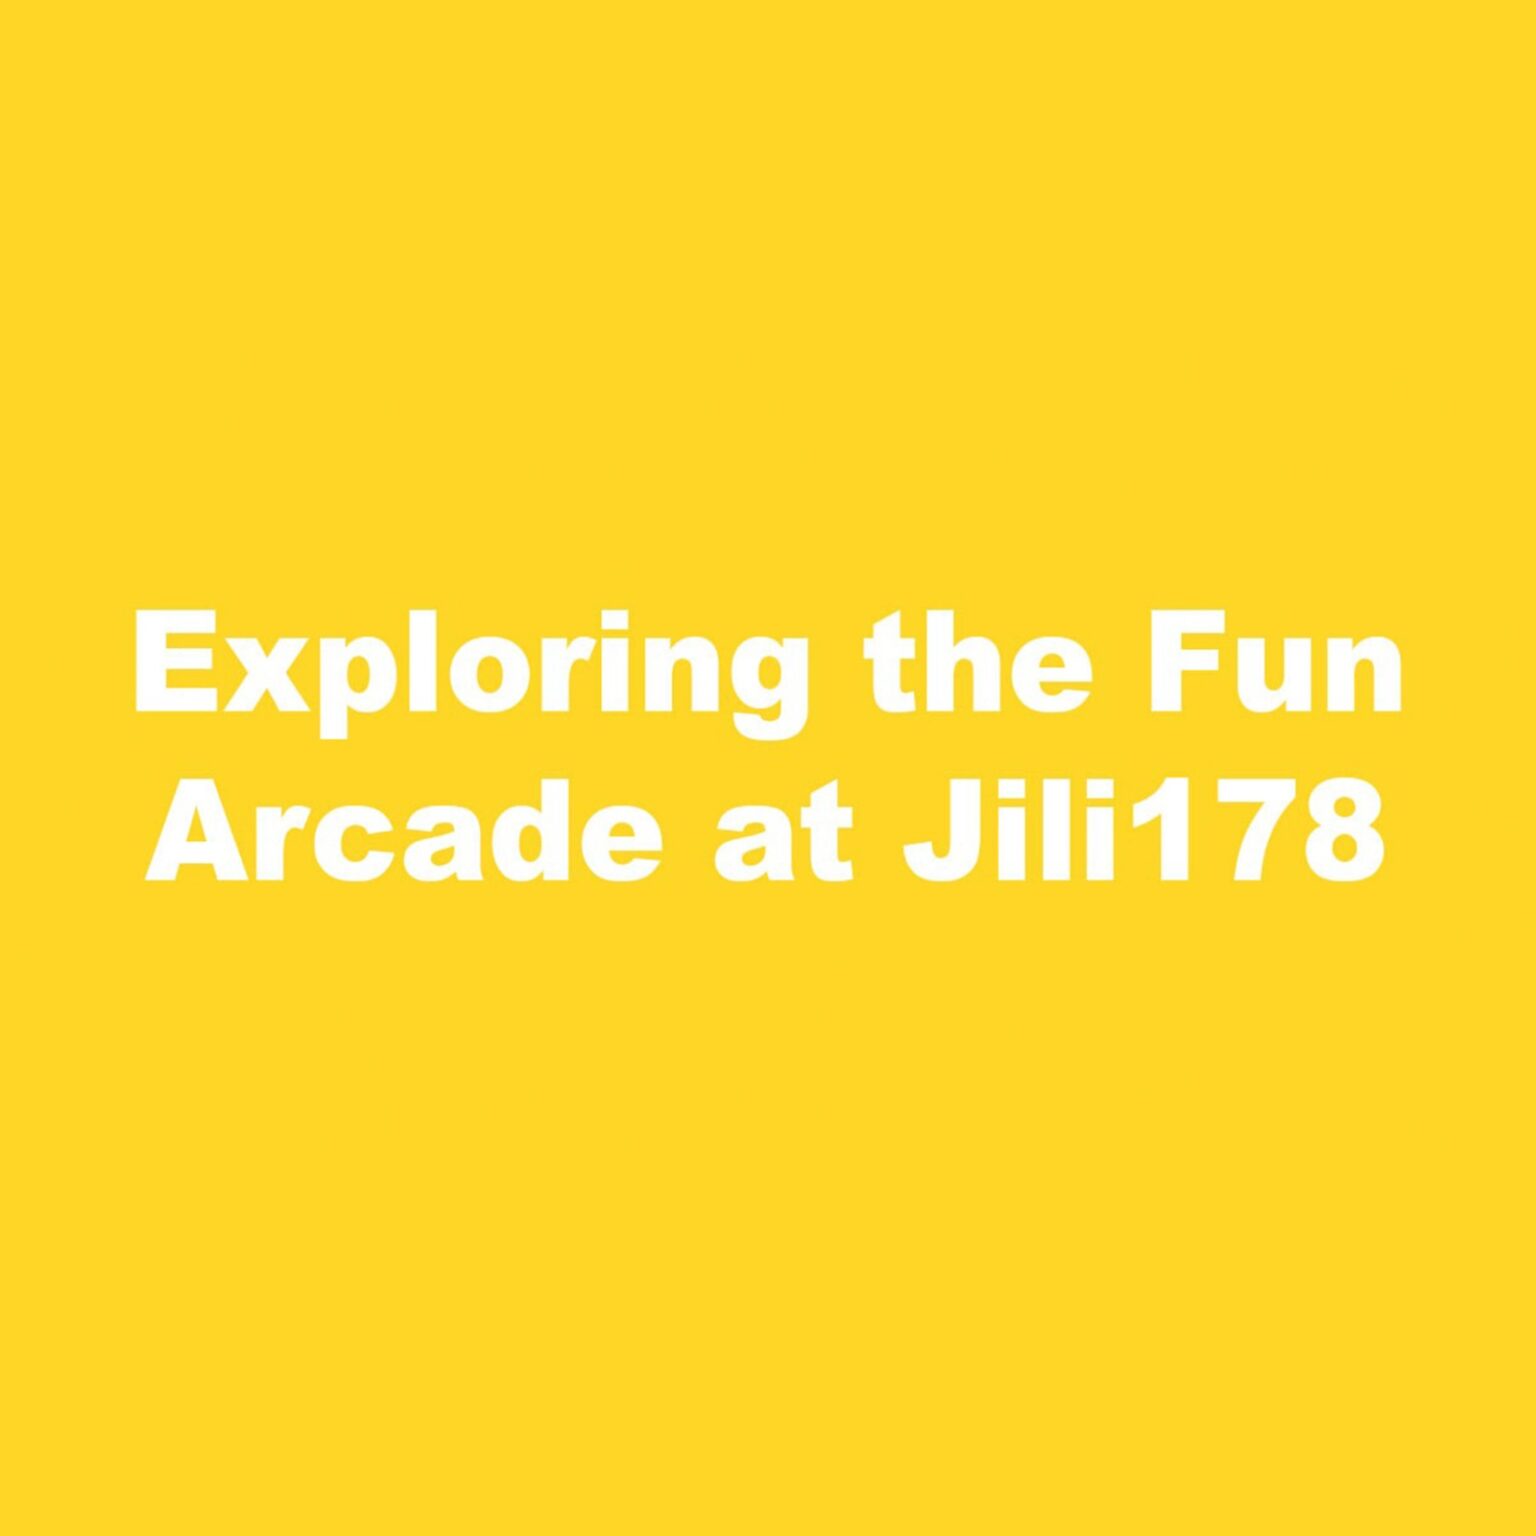 Exploring the Fun Arcade at Jili178